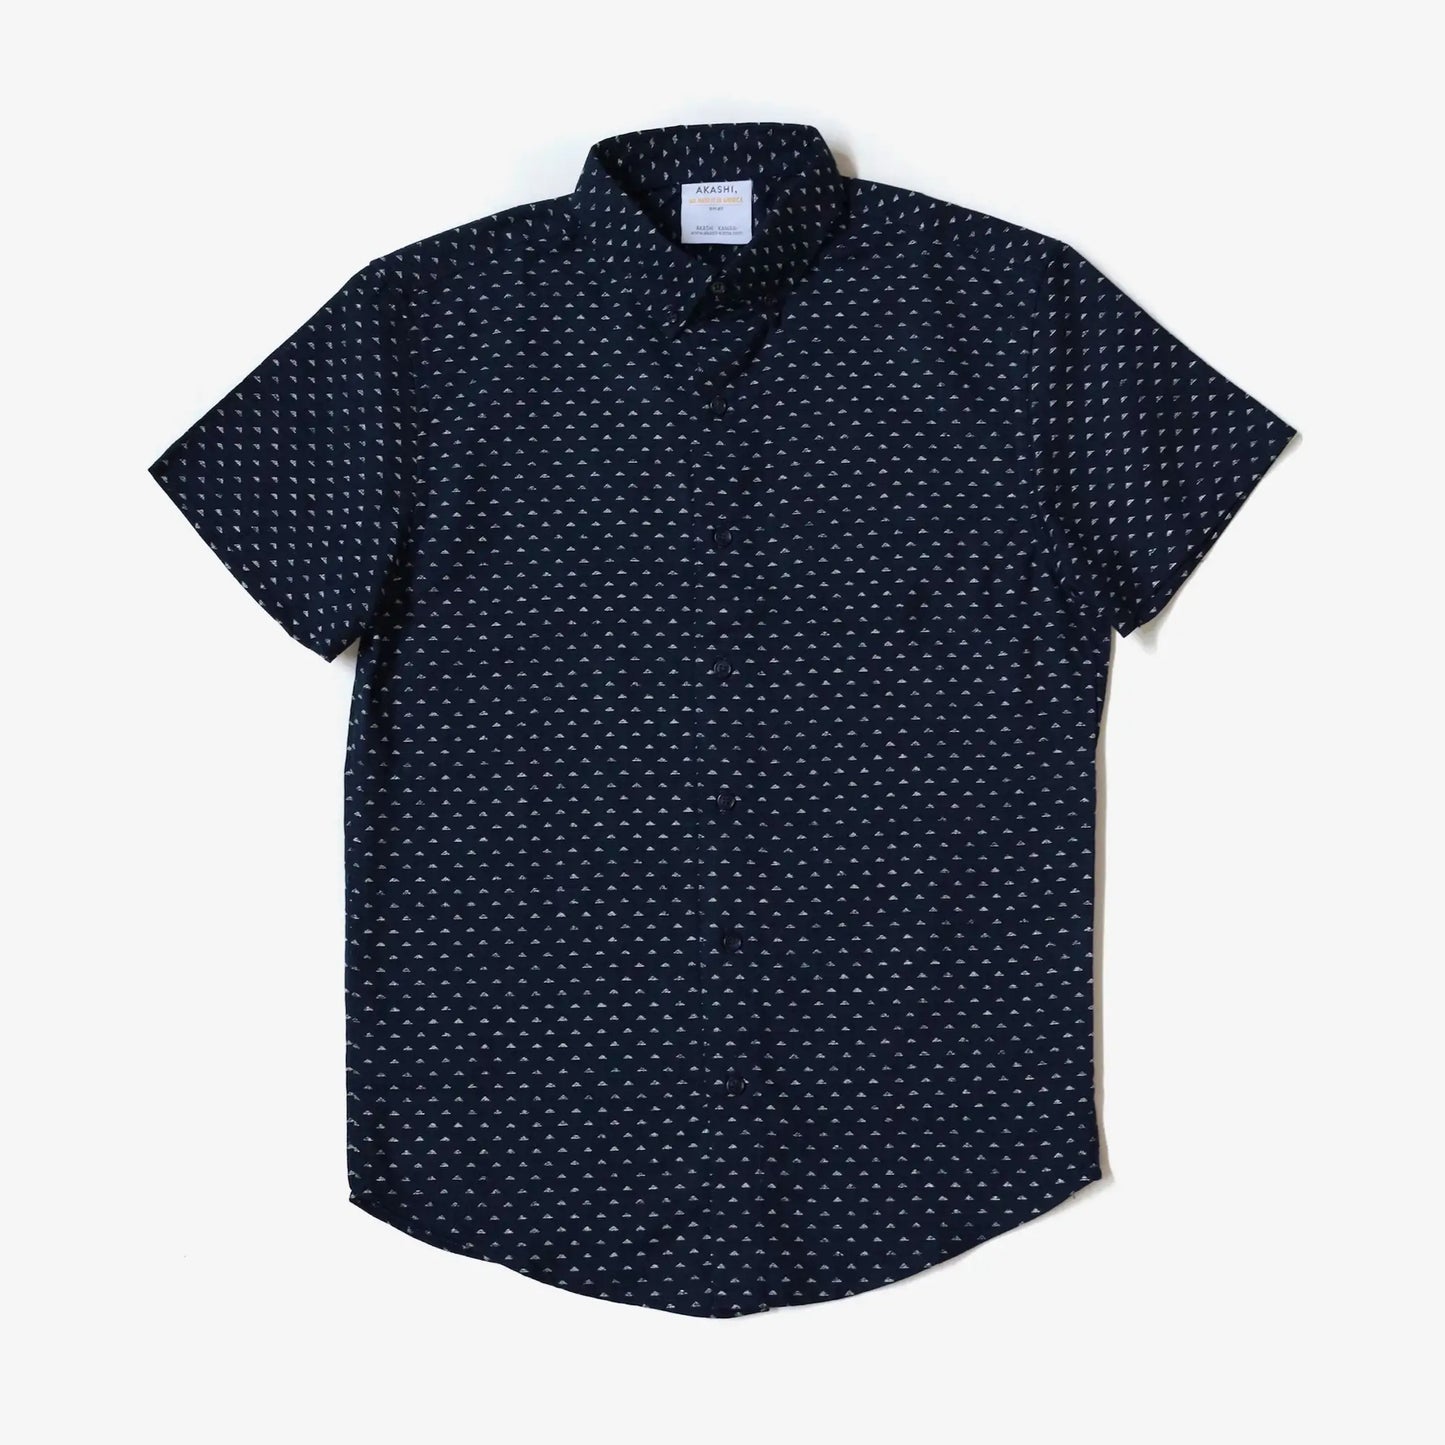 AKASHI-KAMA Japanese Pattern Button Down Indigo Streetwear Shirt Made in USA